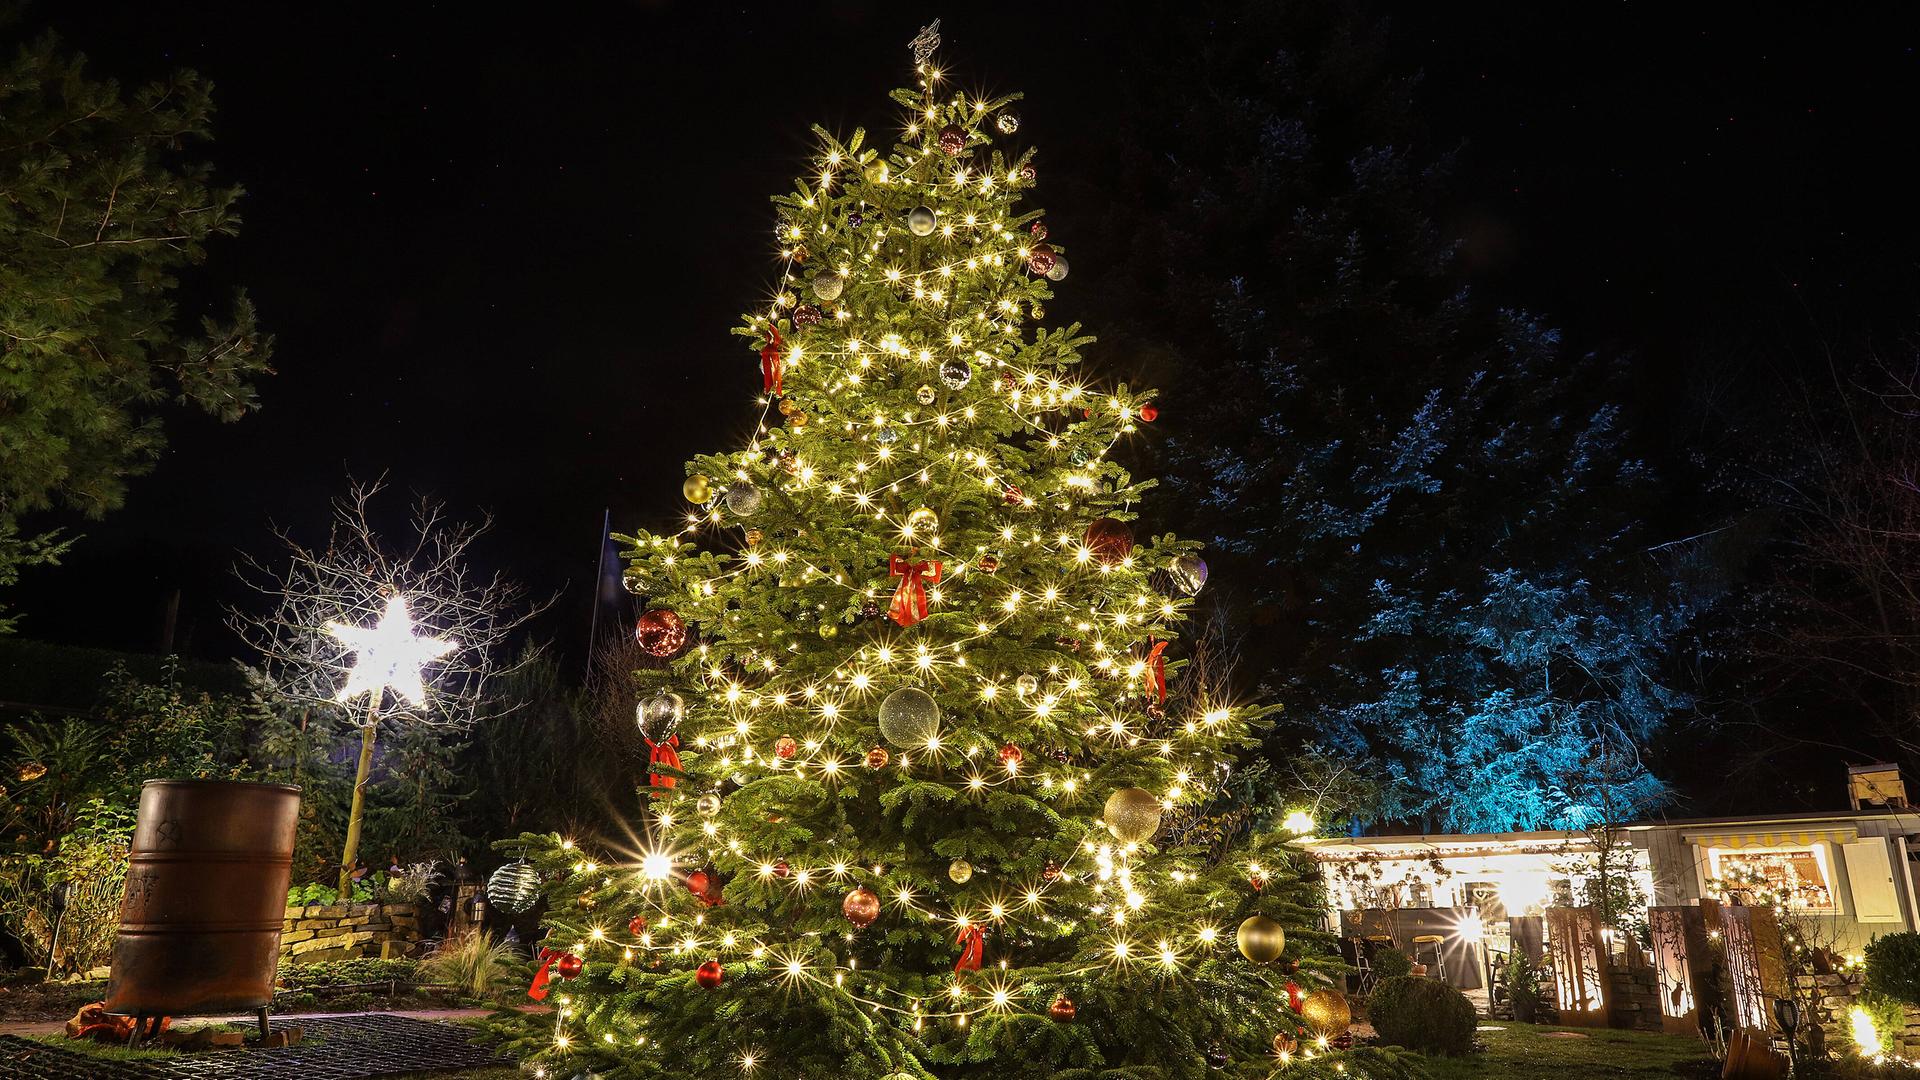 Das Foto zeigt einen großen geschmückten Weihnachtsbaum im Freien auf einem Platz. Der Nadelbaum ist durch Lichterketten und Weihnachtsschmuck erleuchtet.